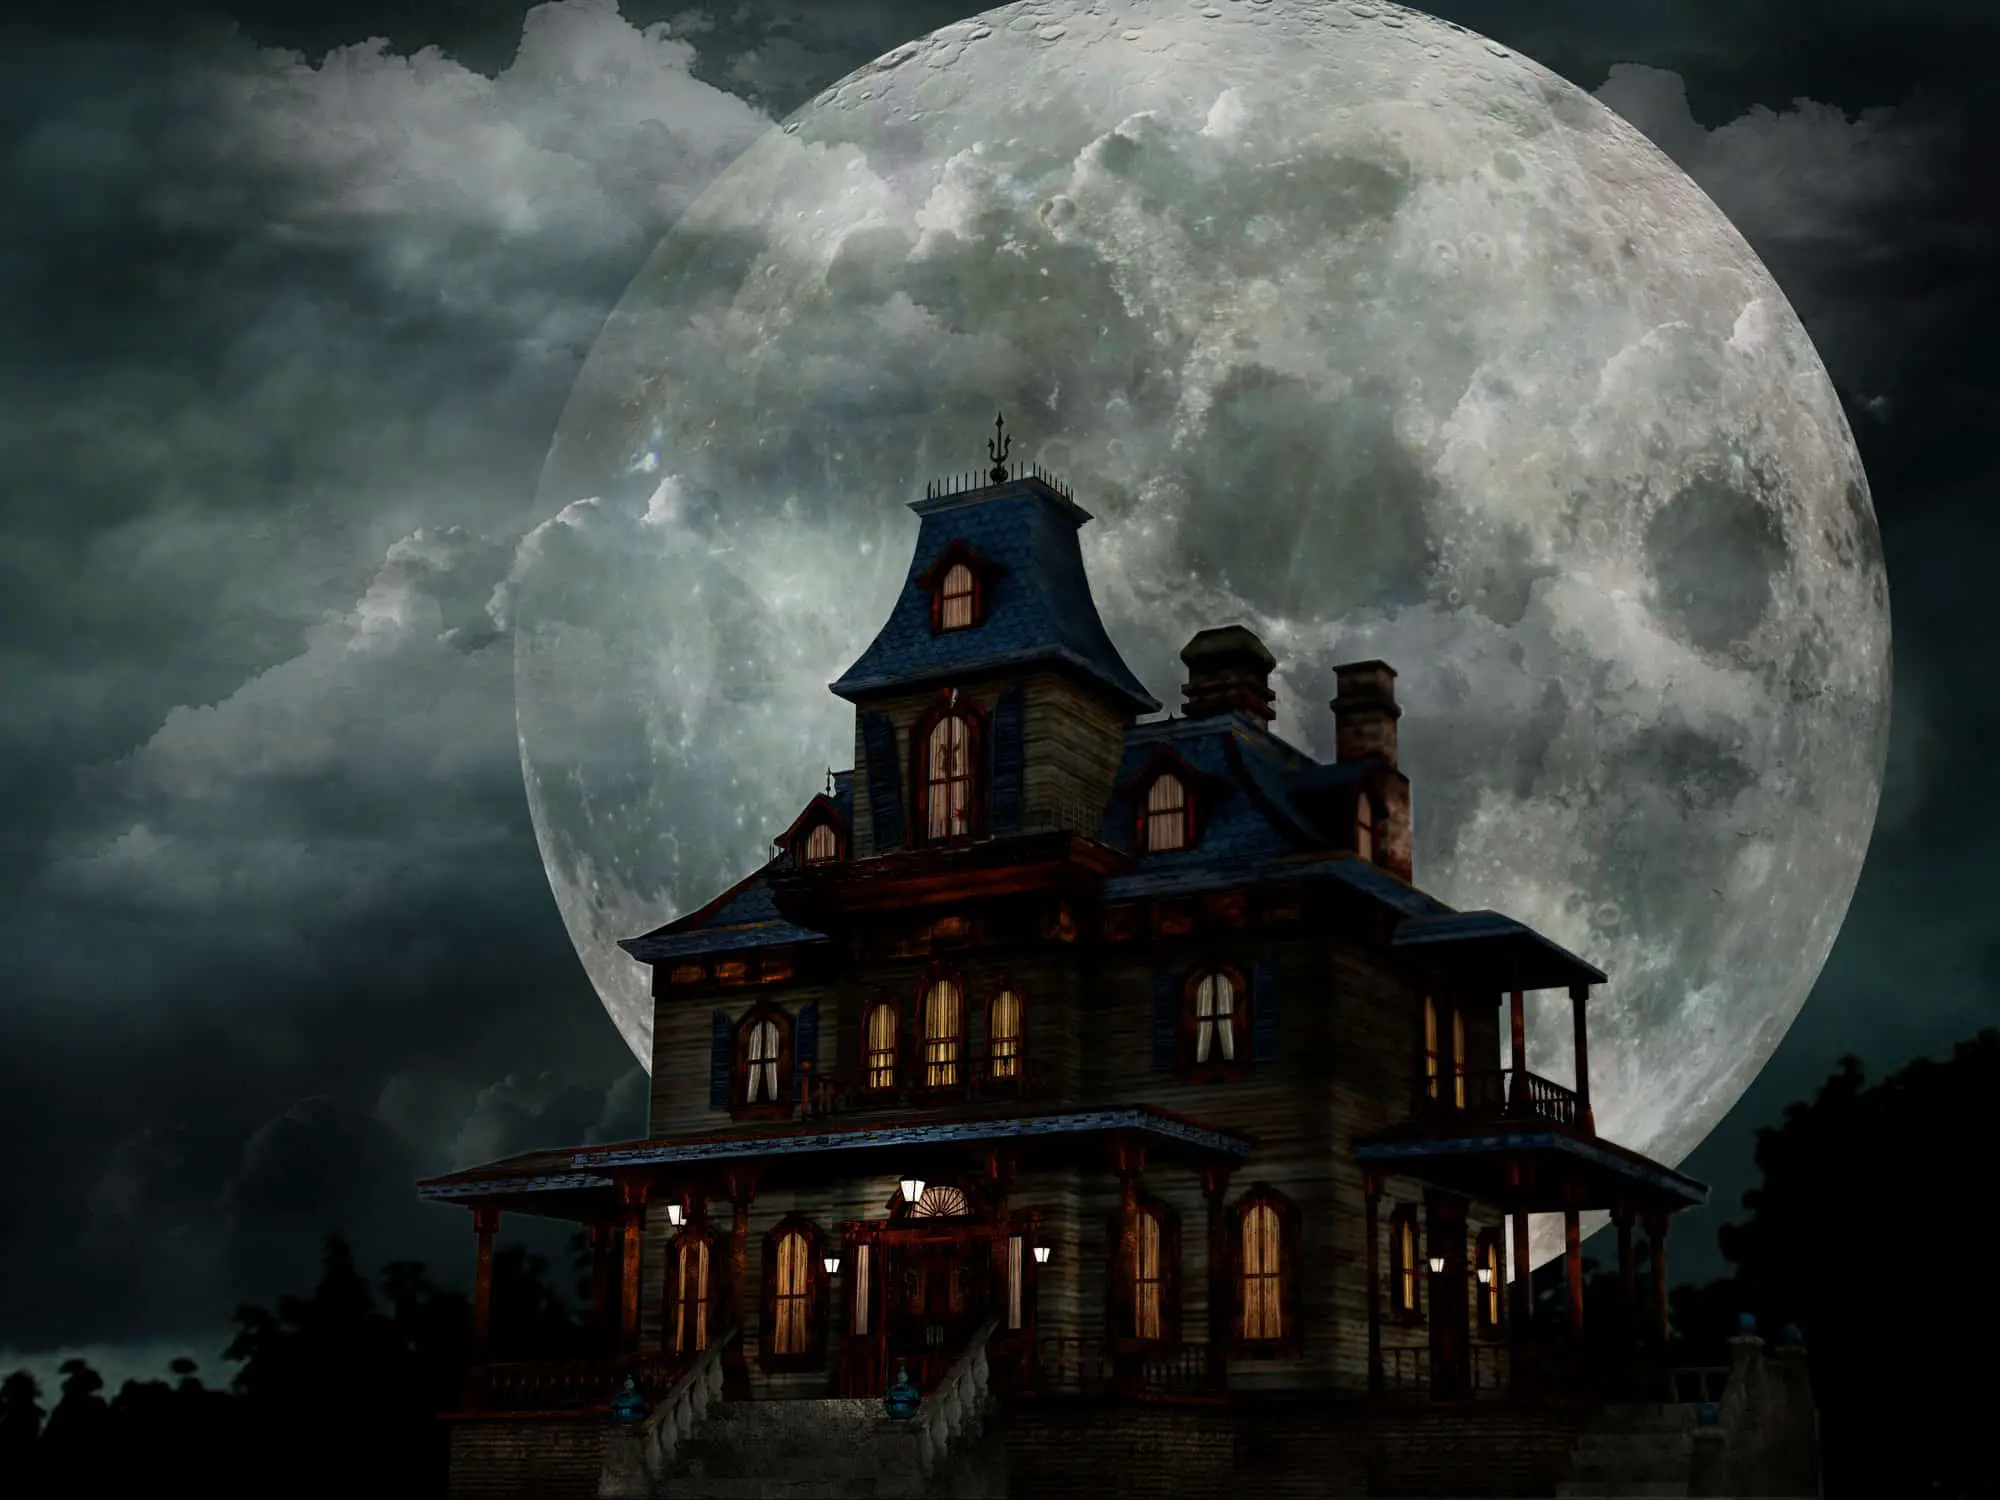 Haunted House Illustration